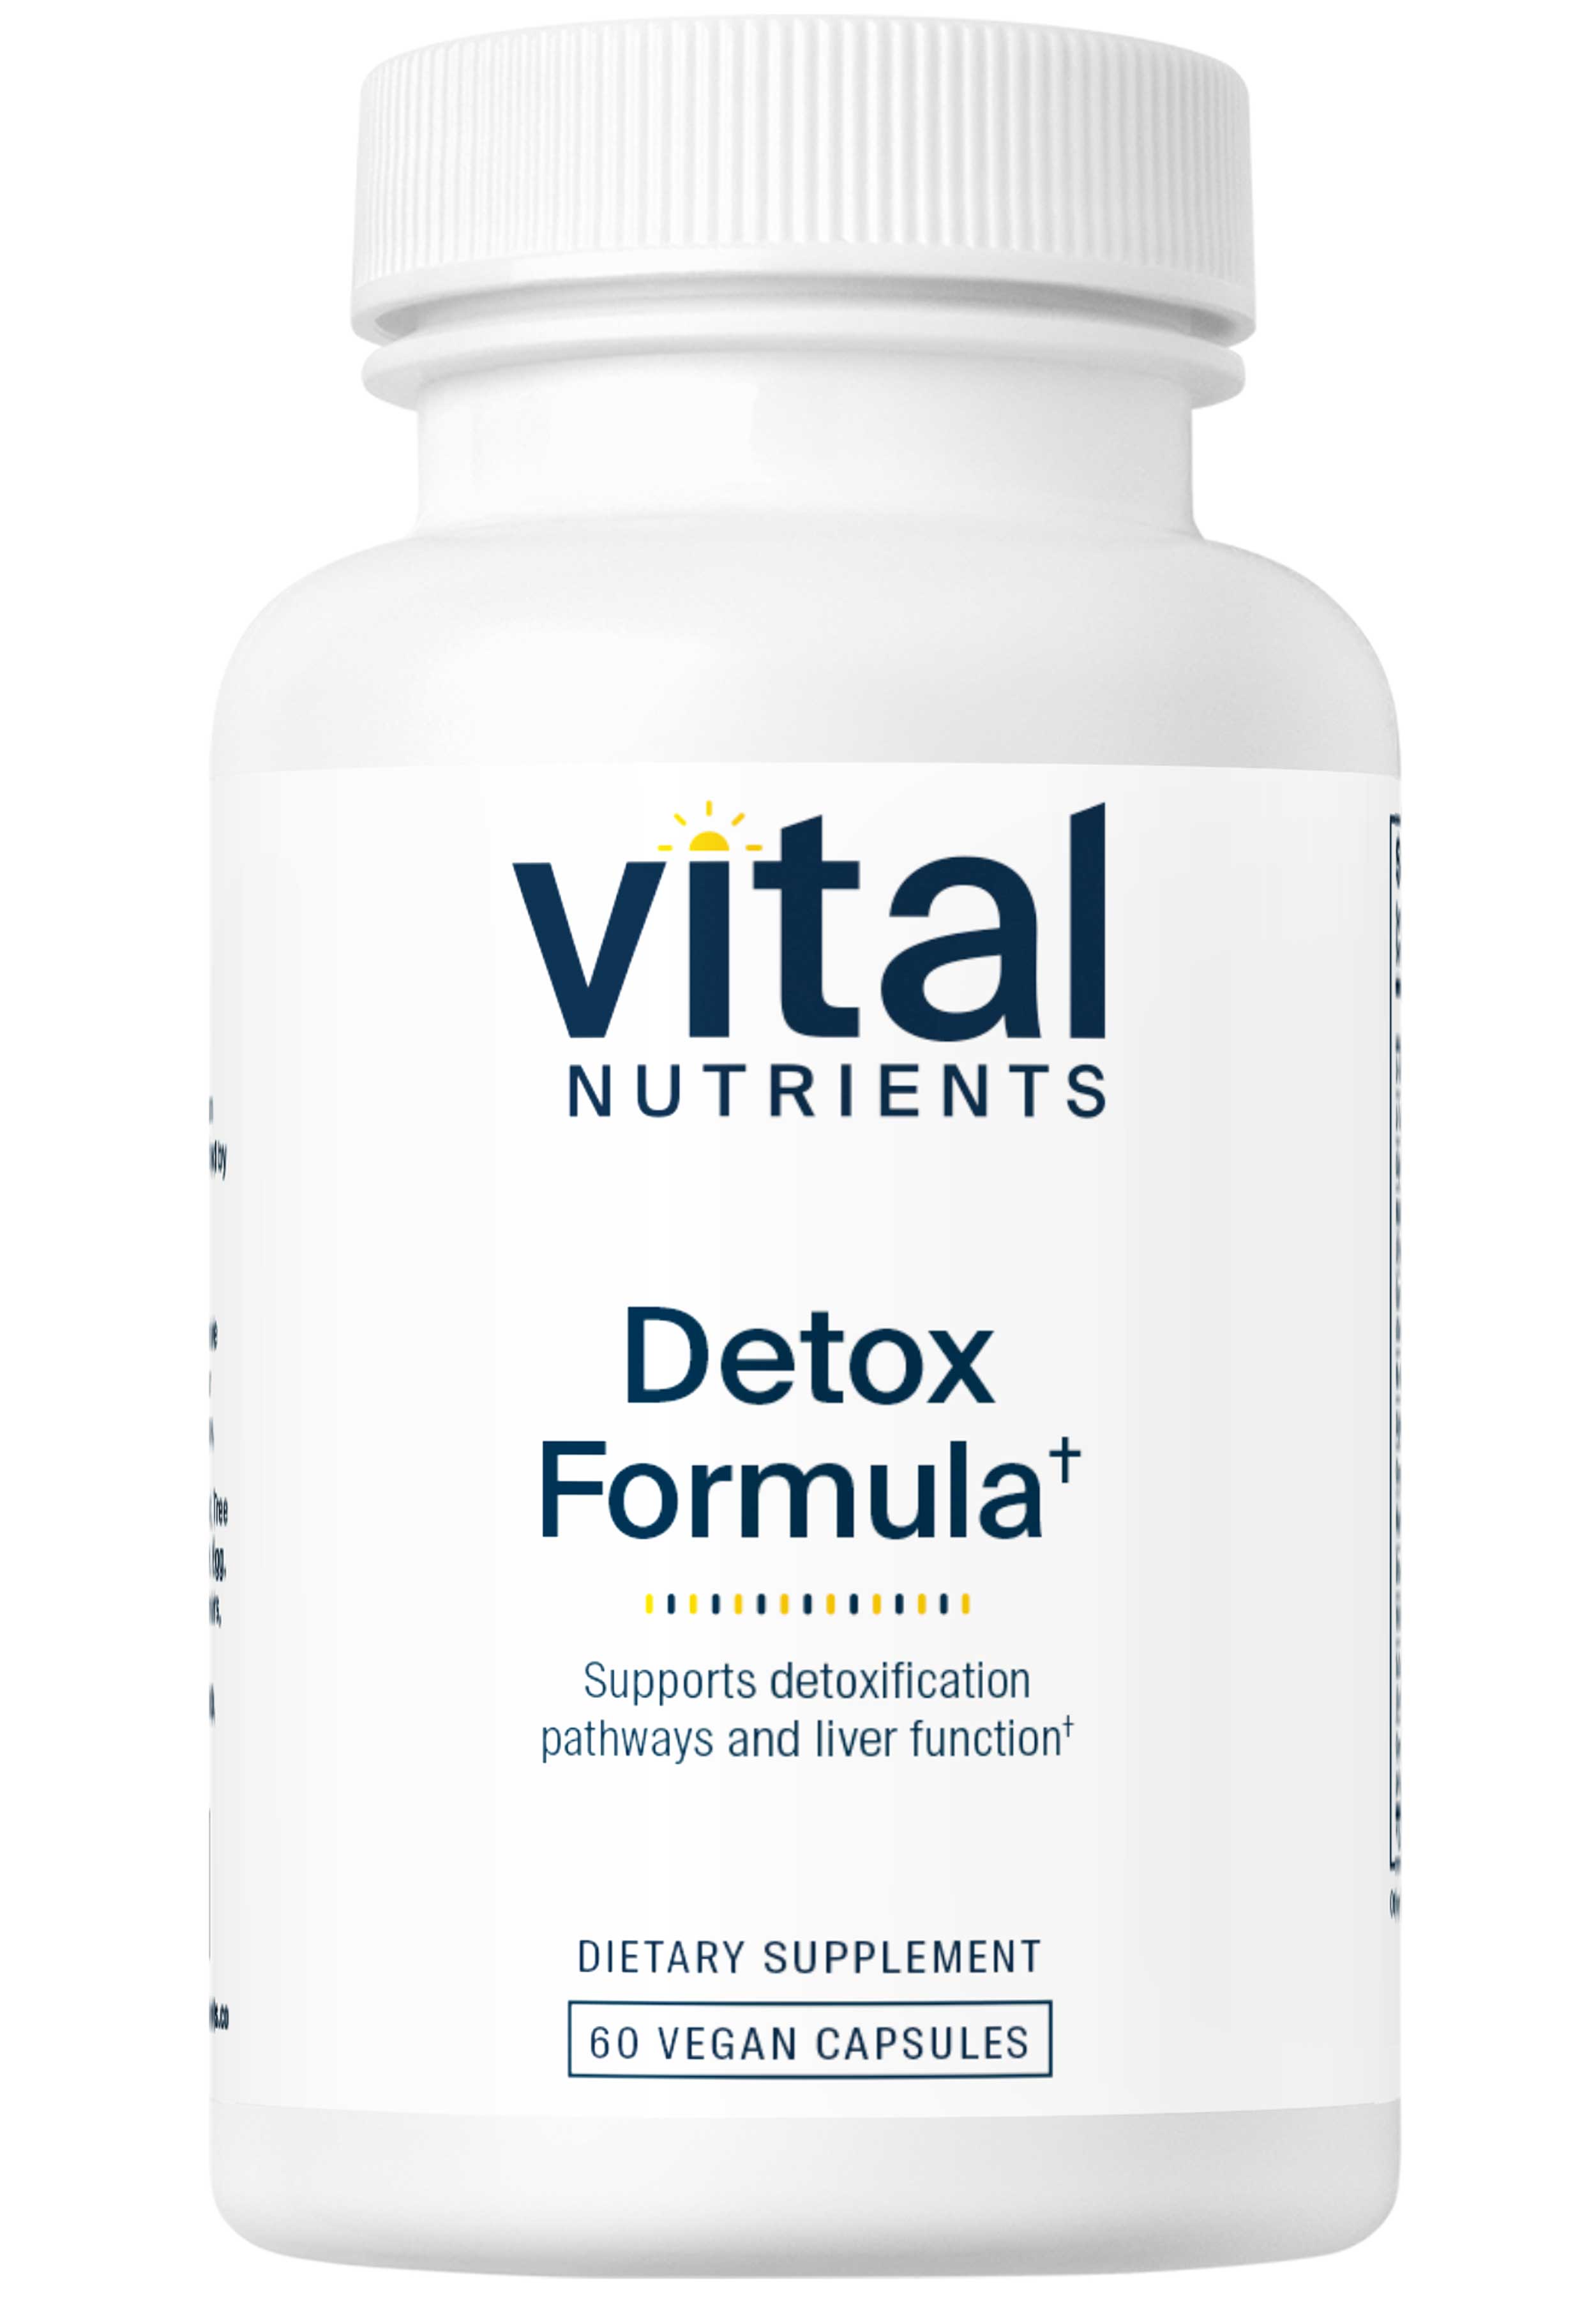 Vital Nutrients Detox Formula